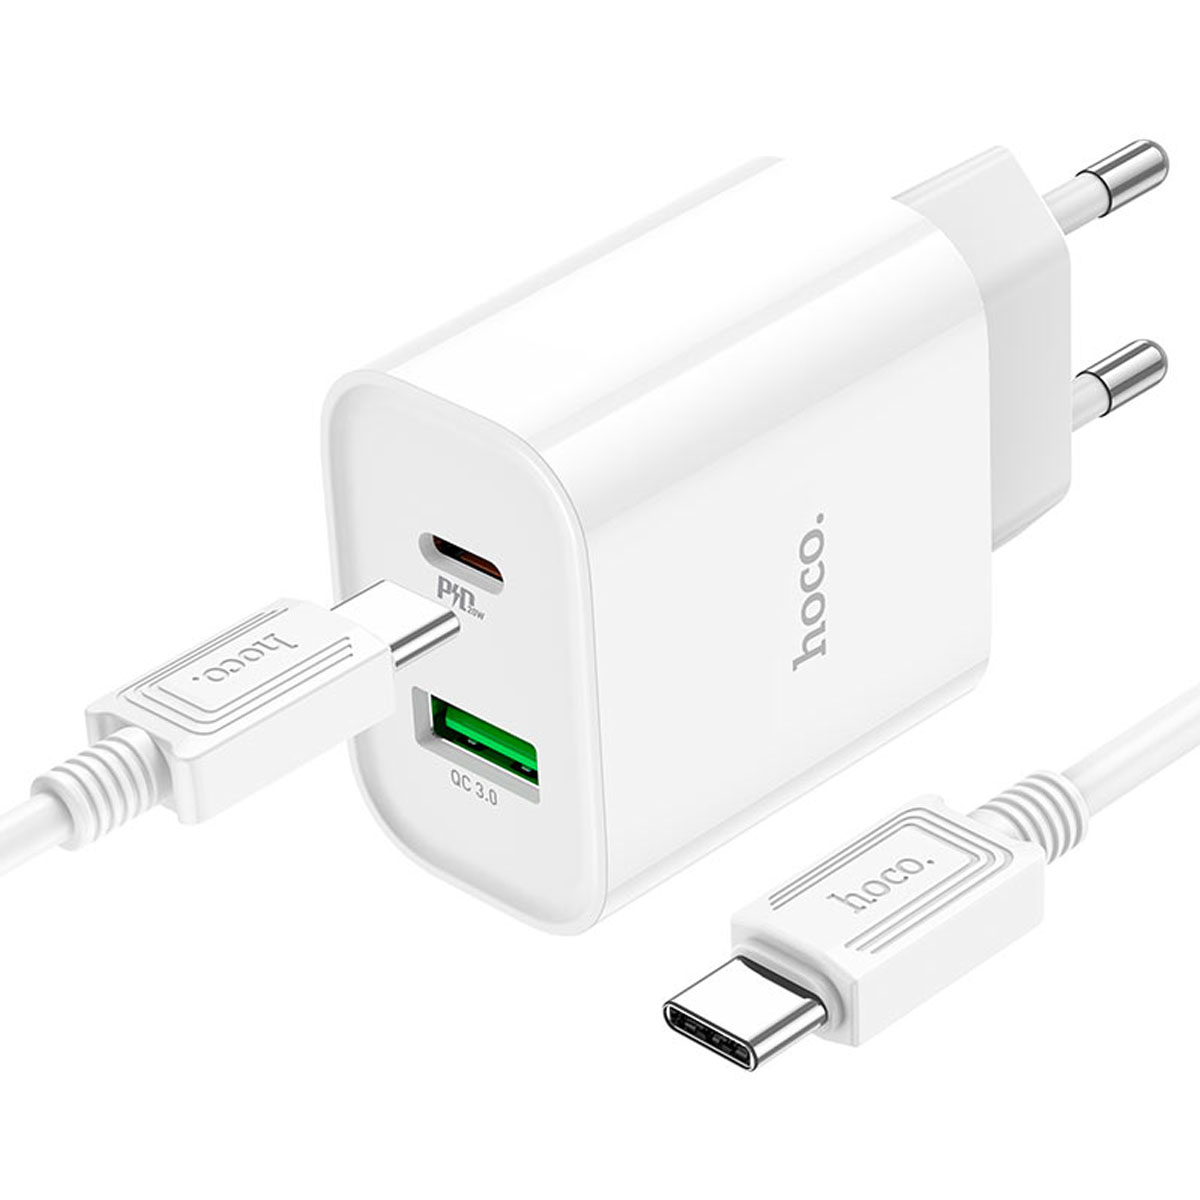 СЗУ (Сетевое зарядное устройство) HOCO C80A Plus Rapido с кабелем USB Type C на USB Type C, 20W, 1 USB Type C, 1 USB, QC3.0, PD20W, длина 1 метр, цвет белый